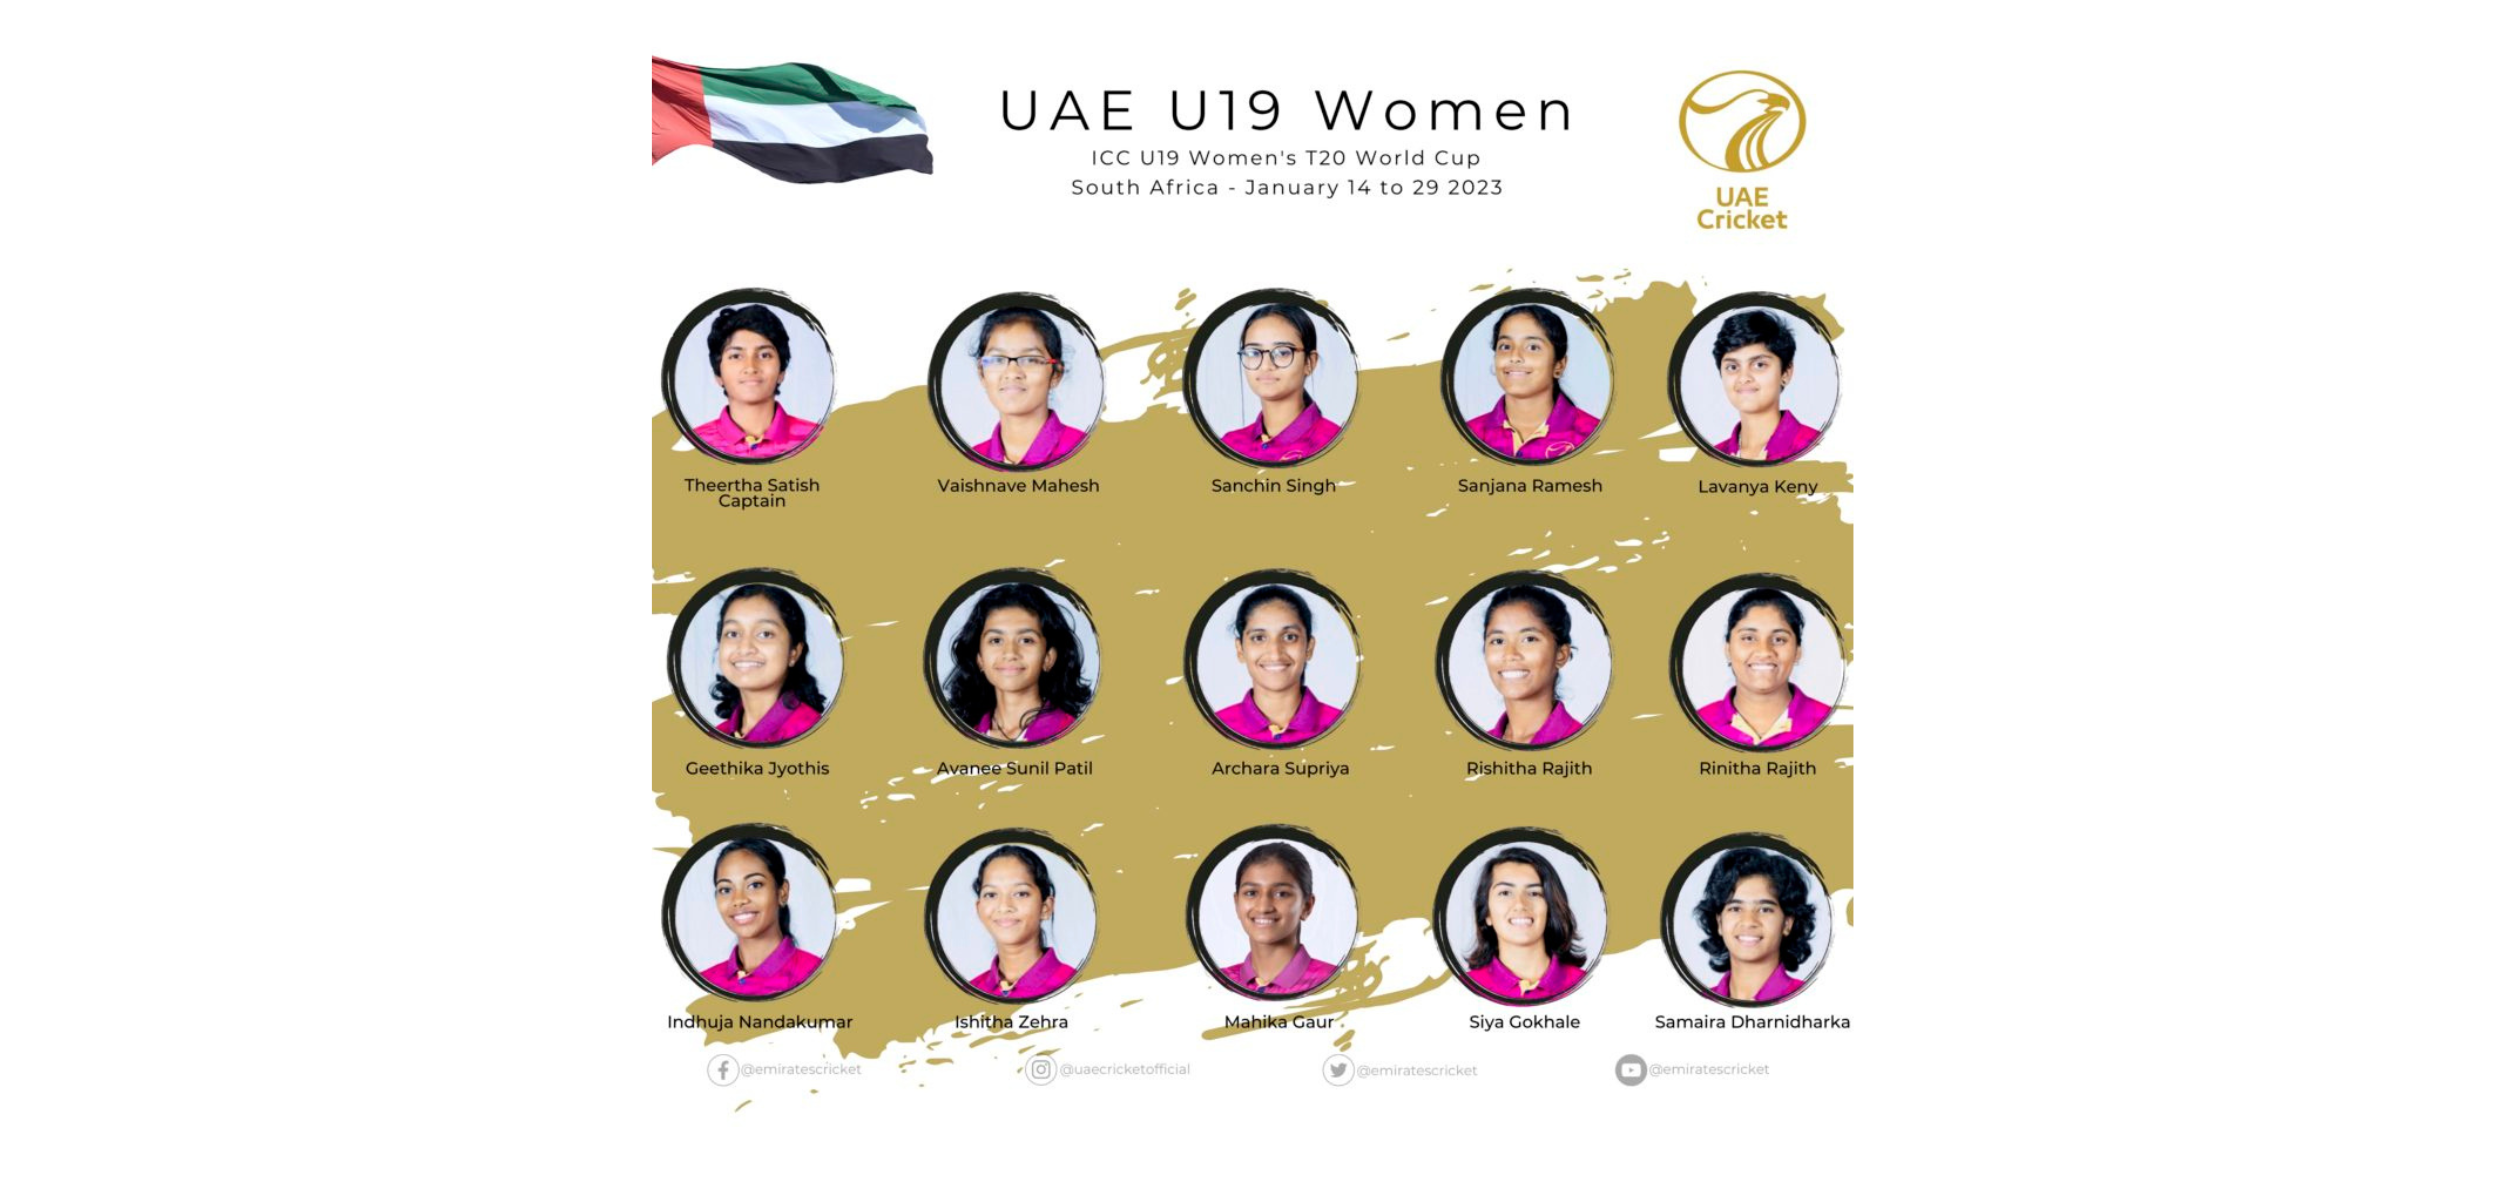 ECB announces team to represent UAE at ICC U19 Women’s T20 World Cup 2023